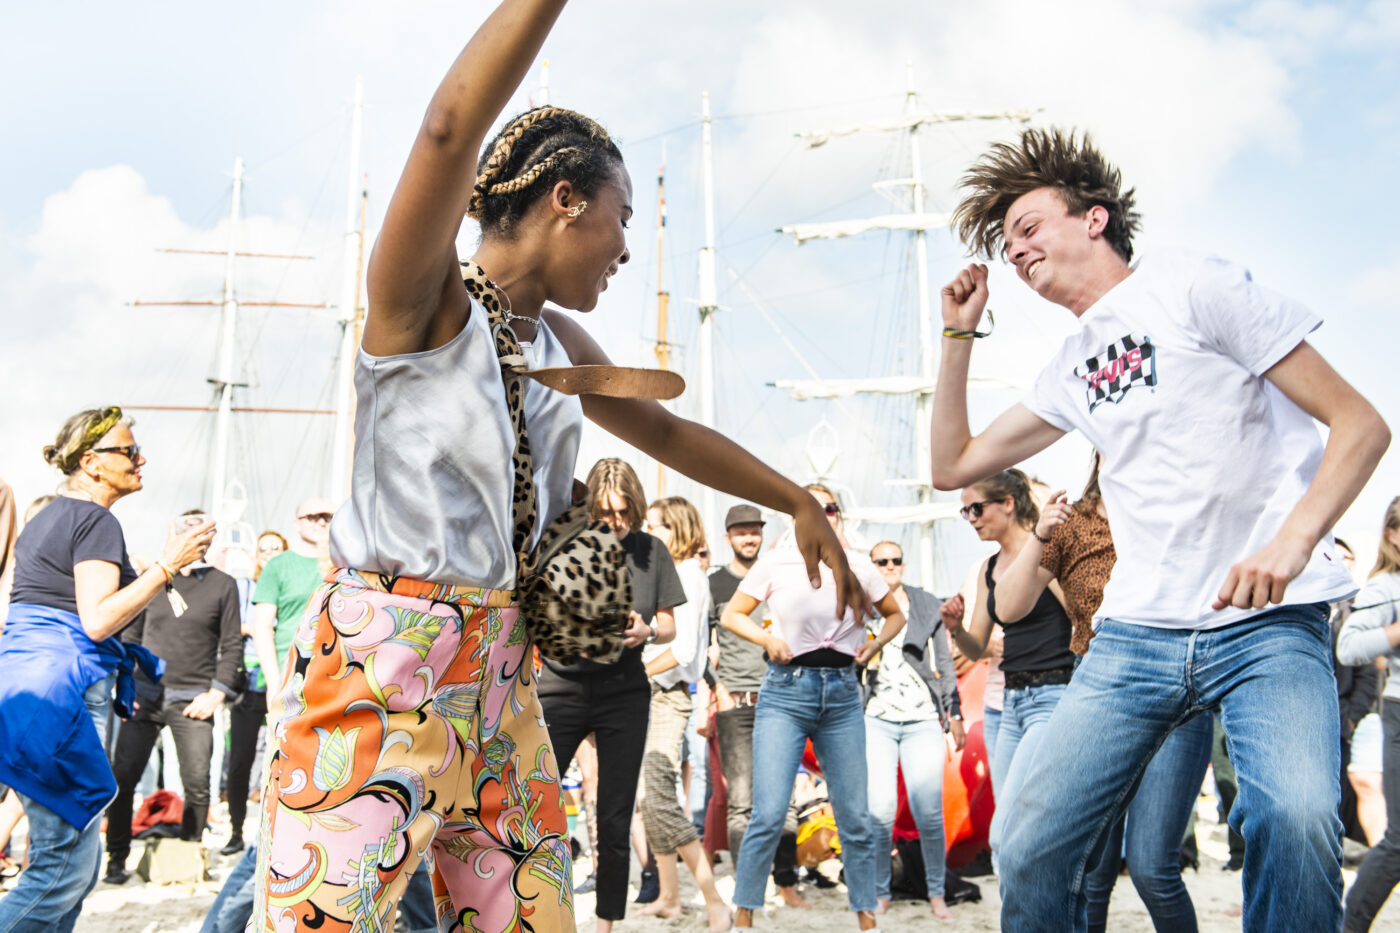 Twee jonge mensen dansen op de muziek van KD Soundsystem op voormalig festivalterrein de Betonning tijdens Oerol 2019